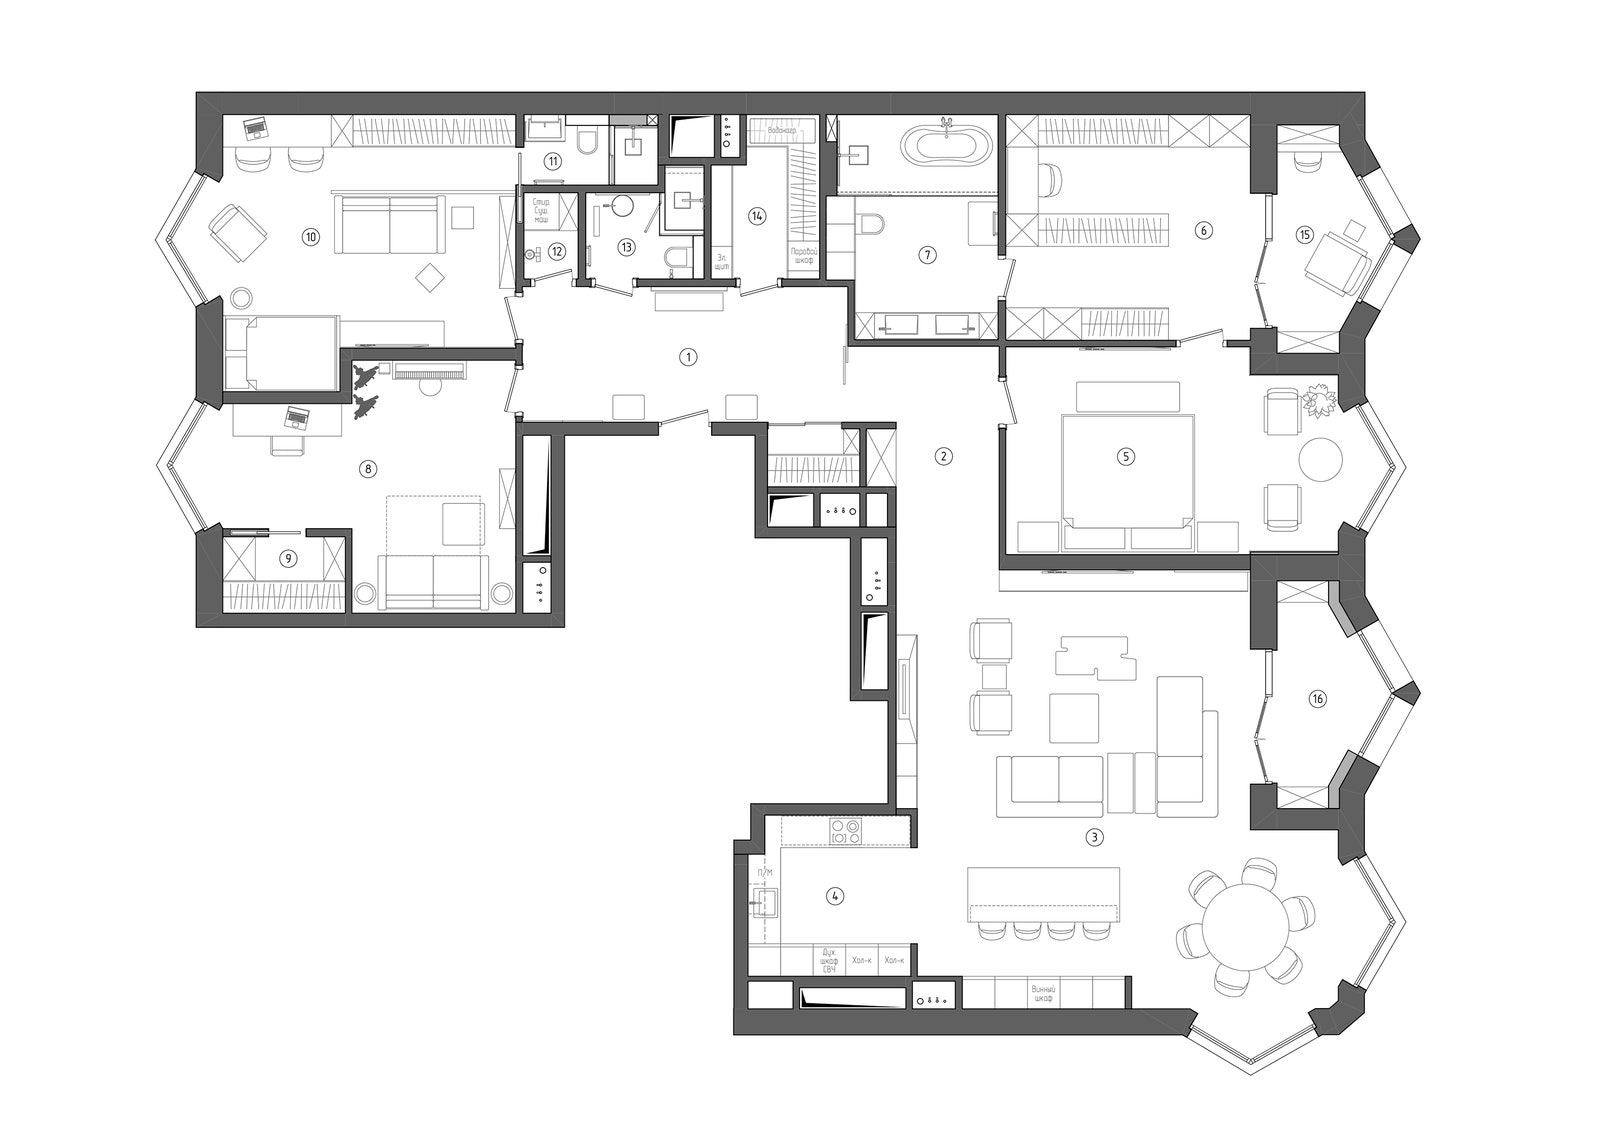 1 — холл 2 — коридор 3 — гостинаястоловая 4 — кухня 5 — хозяйская спальня 6 — гардеробная 7 — ванная 8 — кабинет 9 —...